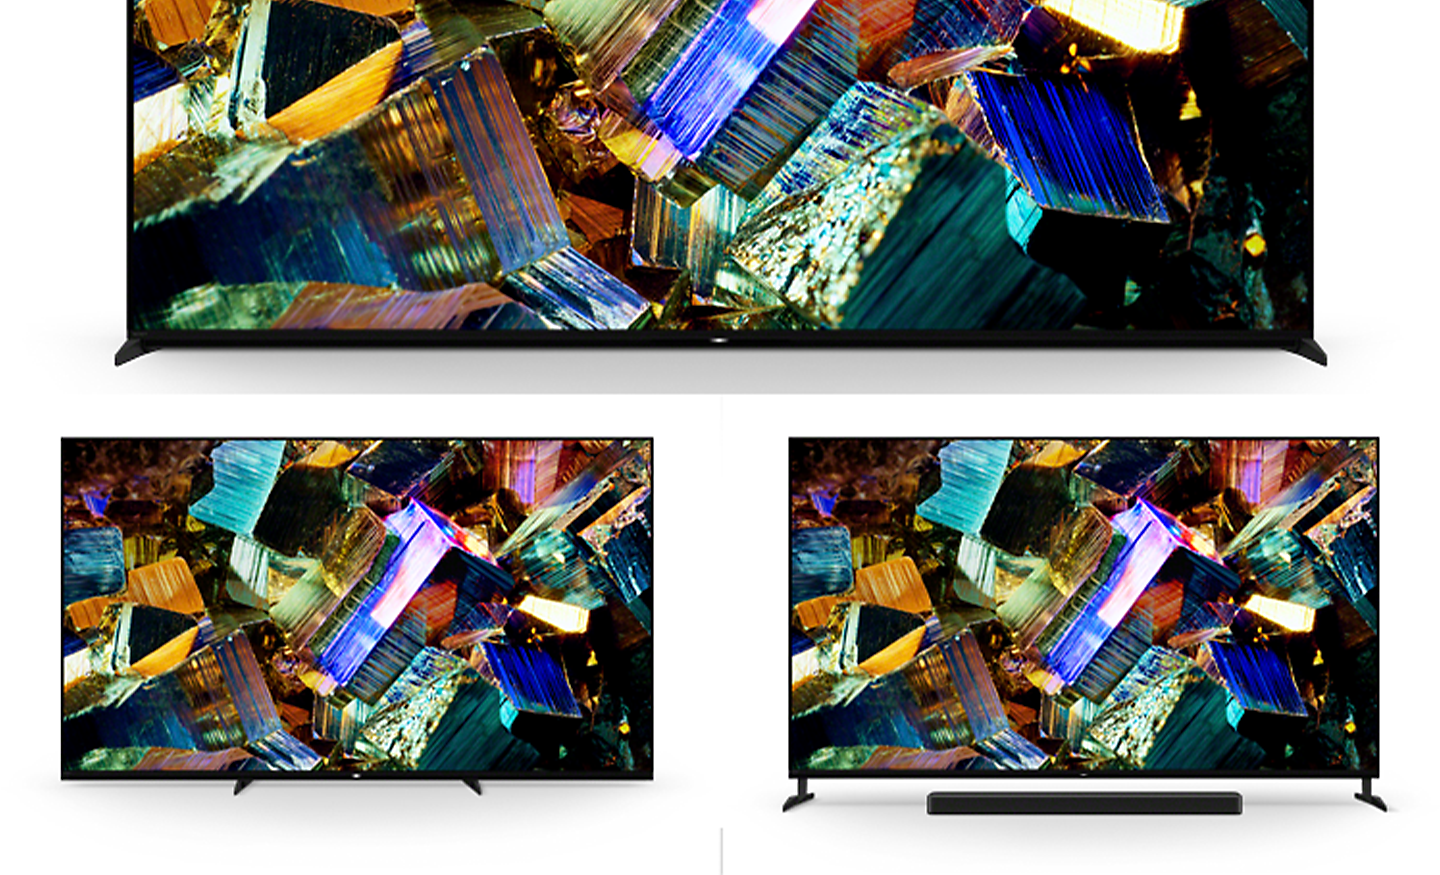 Bilde av tre BRAVIA-TV-er i Z9K-serien med stativ i standardplassering, smal plassering og soundbarplassering og skjermbilder av fargerike esker